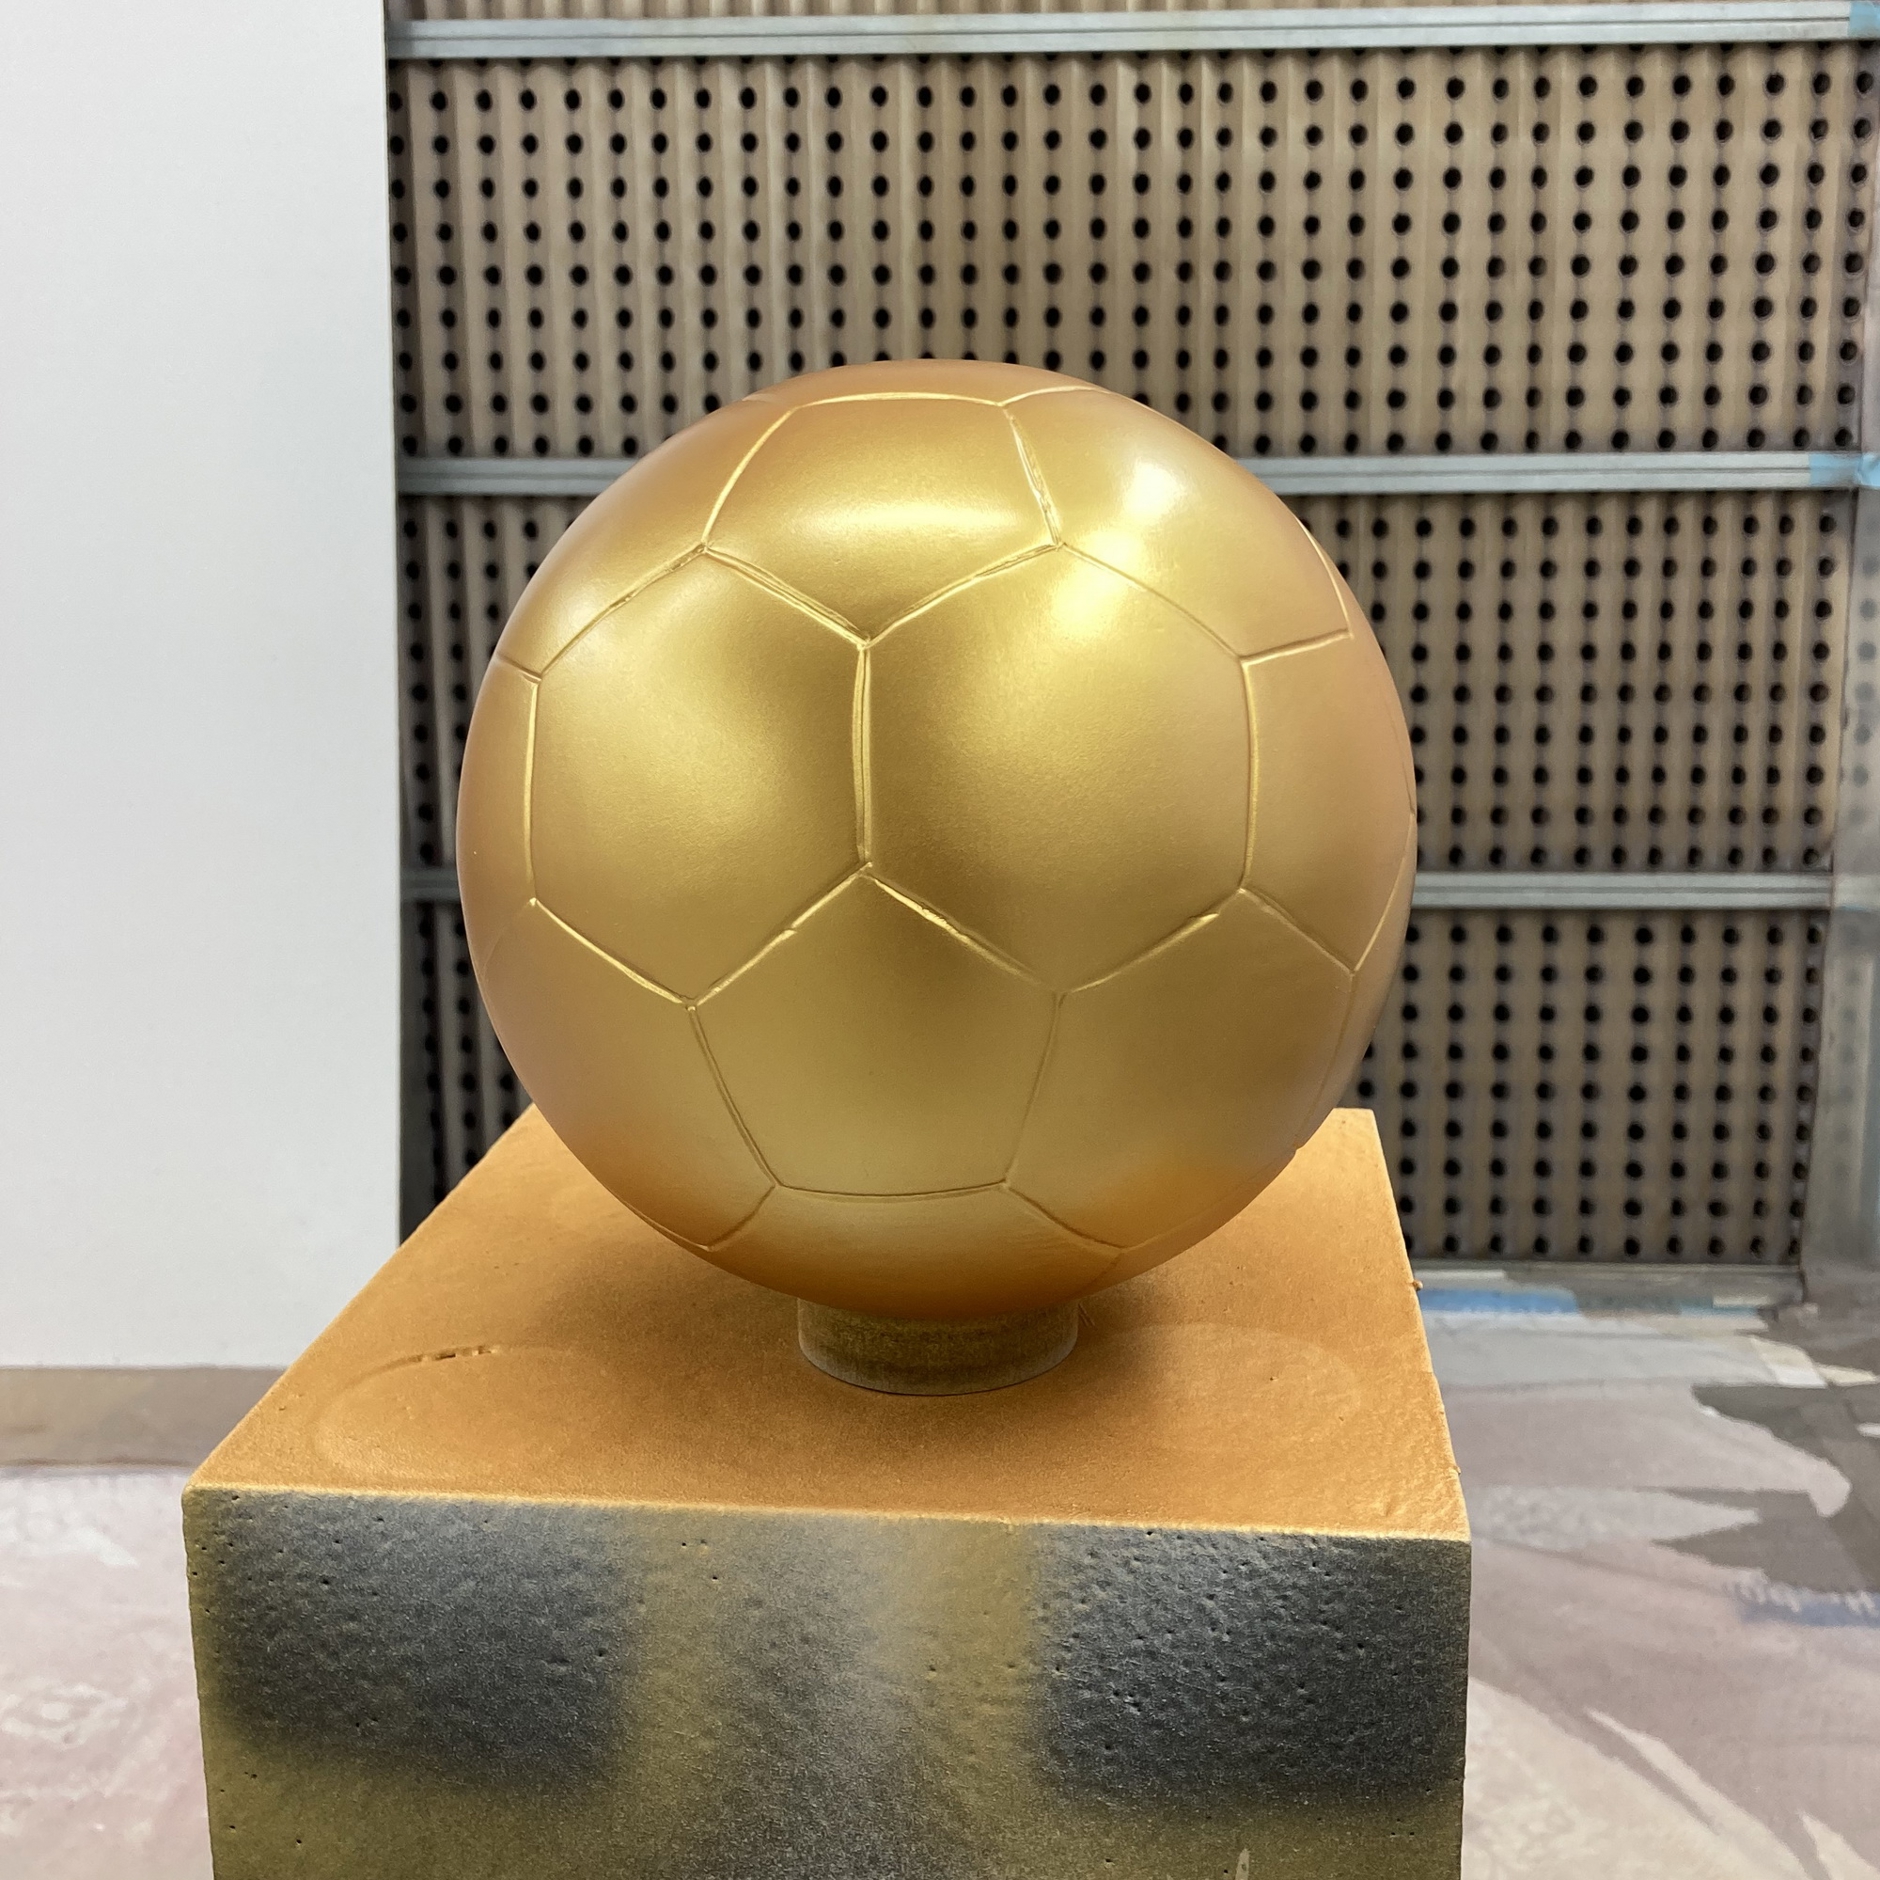 Ein goldener Ball ziert den neuen Pokal